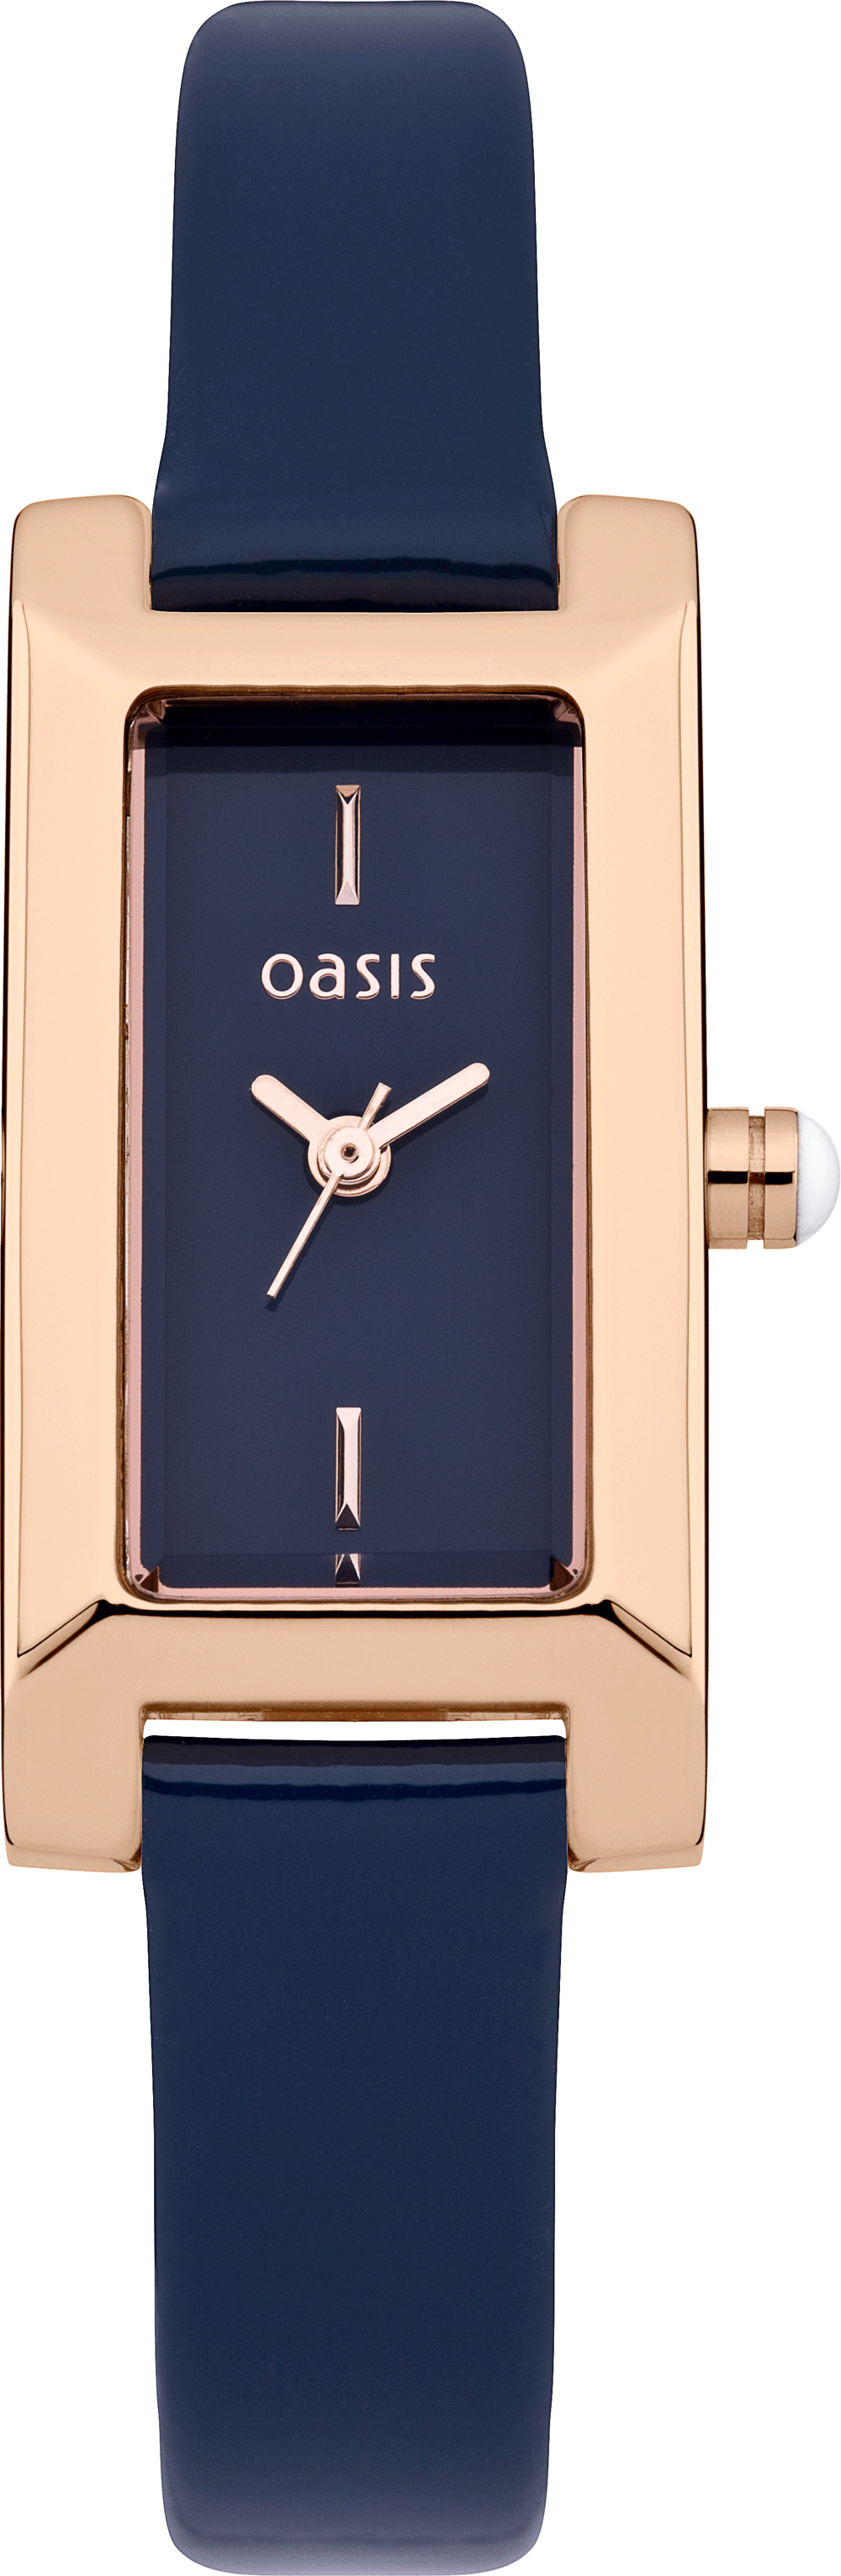 Foto Oasis Reloj de la mujer B1355